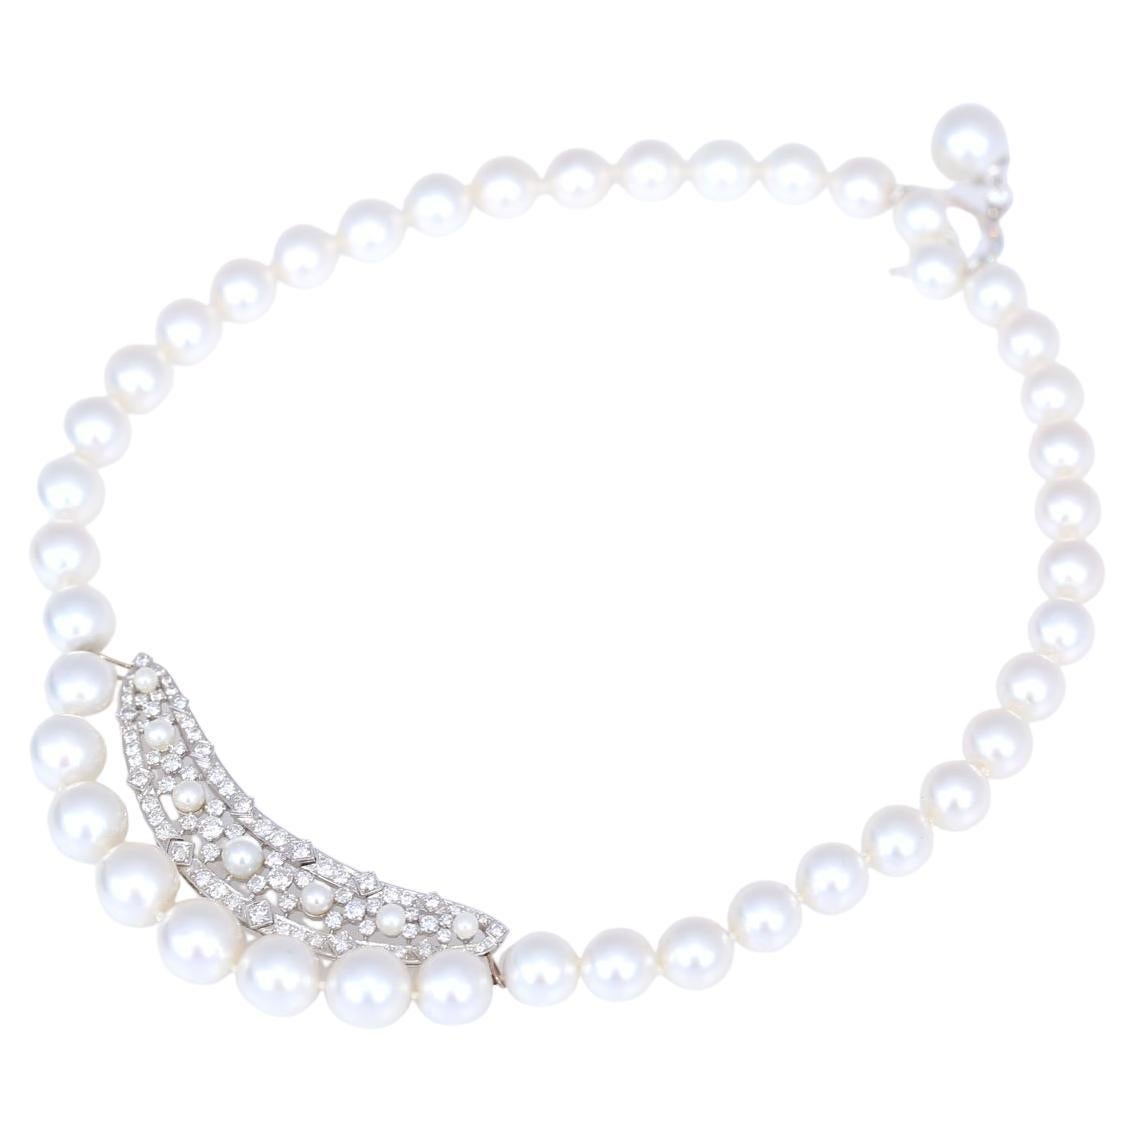 Perlen-Diamanten-Halskette AAA 2,5ct, 2020
Sehr ungewöhnliche Perlenkette mit einem 2,5 Karat Diamanteneinsatz. Eine feine Perle mit Diamanten auf der Rückseite ist ein wirklich seltenes und geniales Schloss. Alle Perlen sind von dreifacher